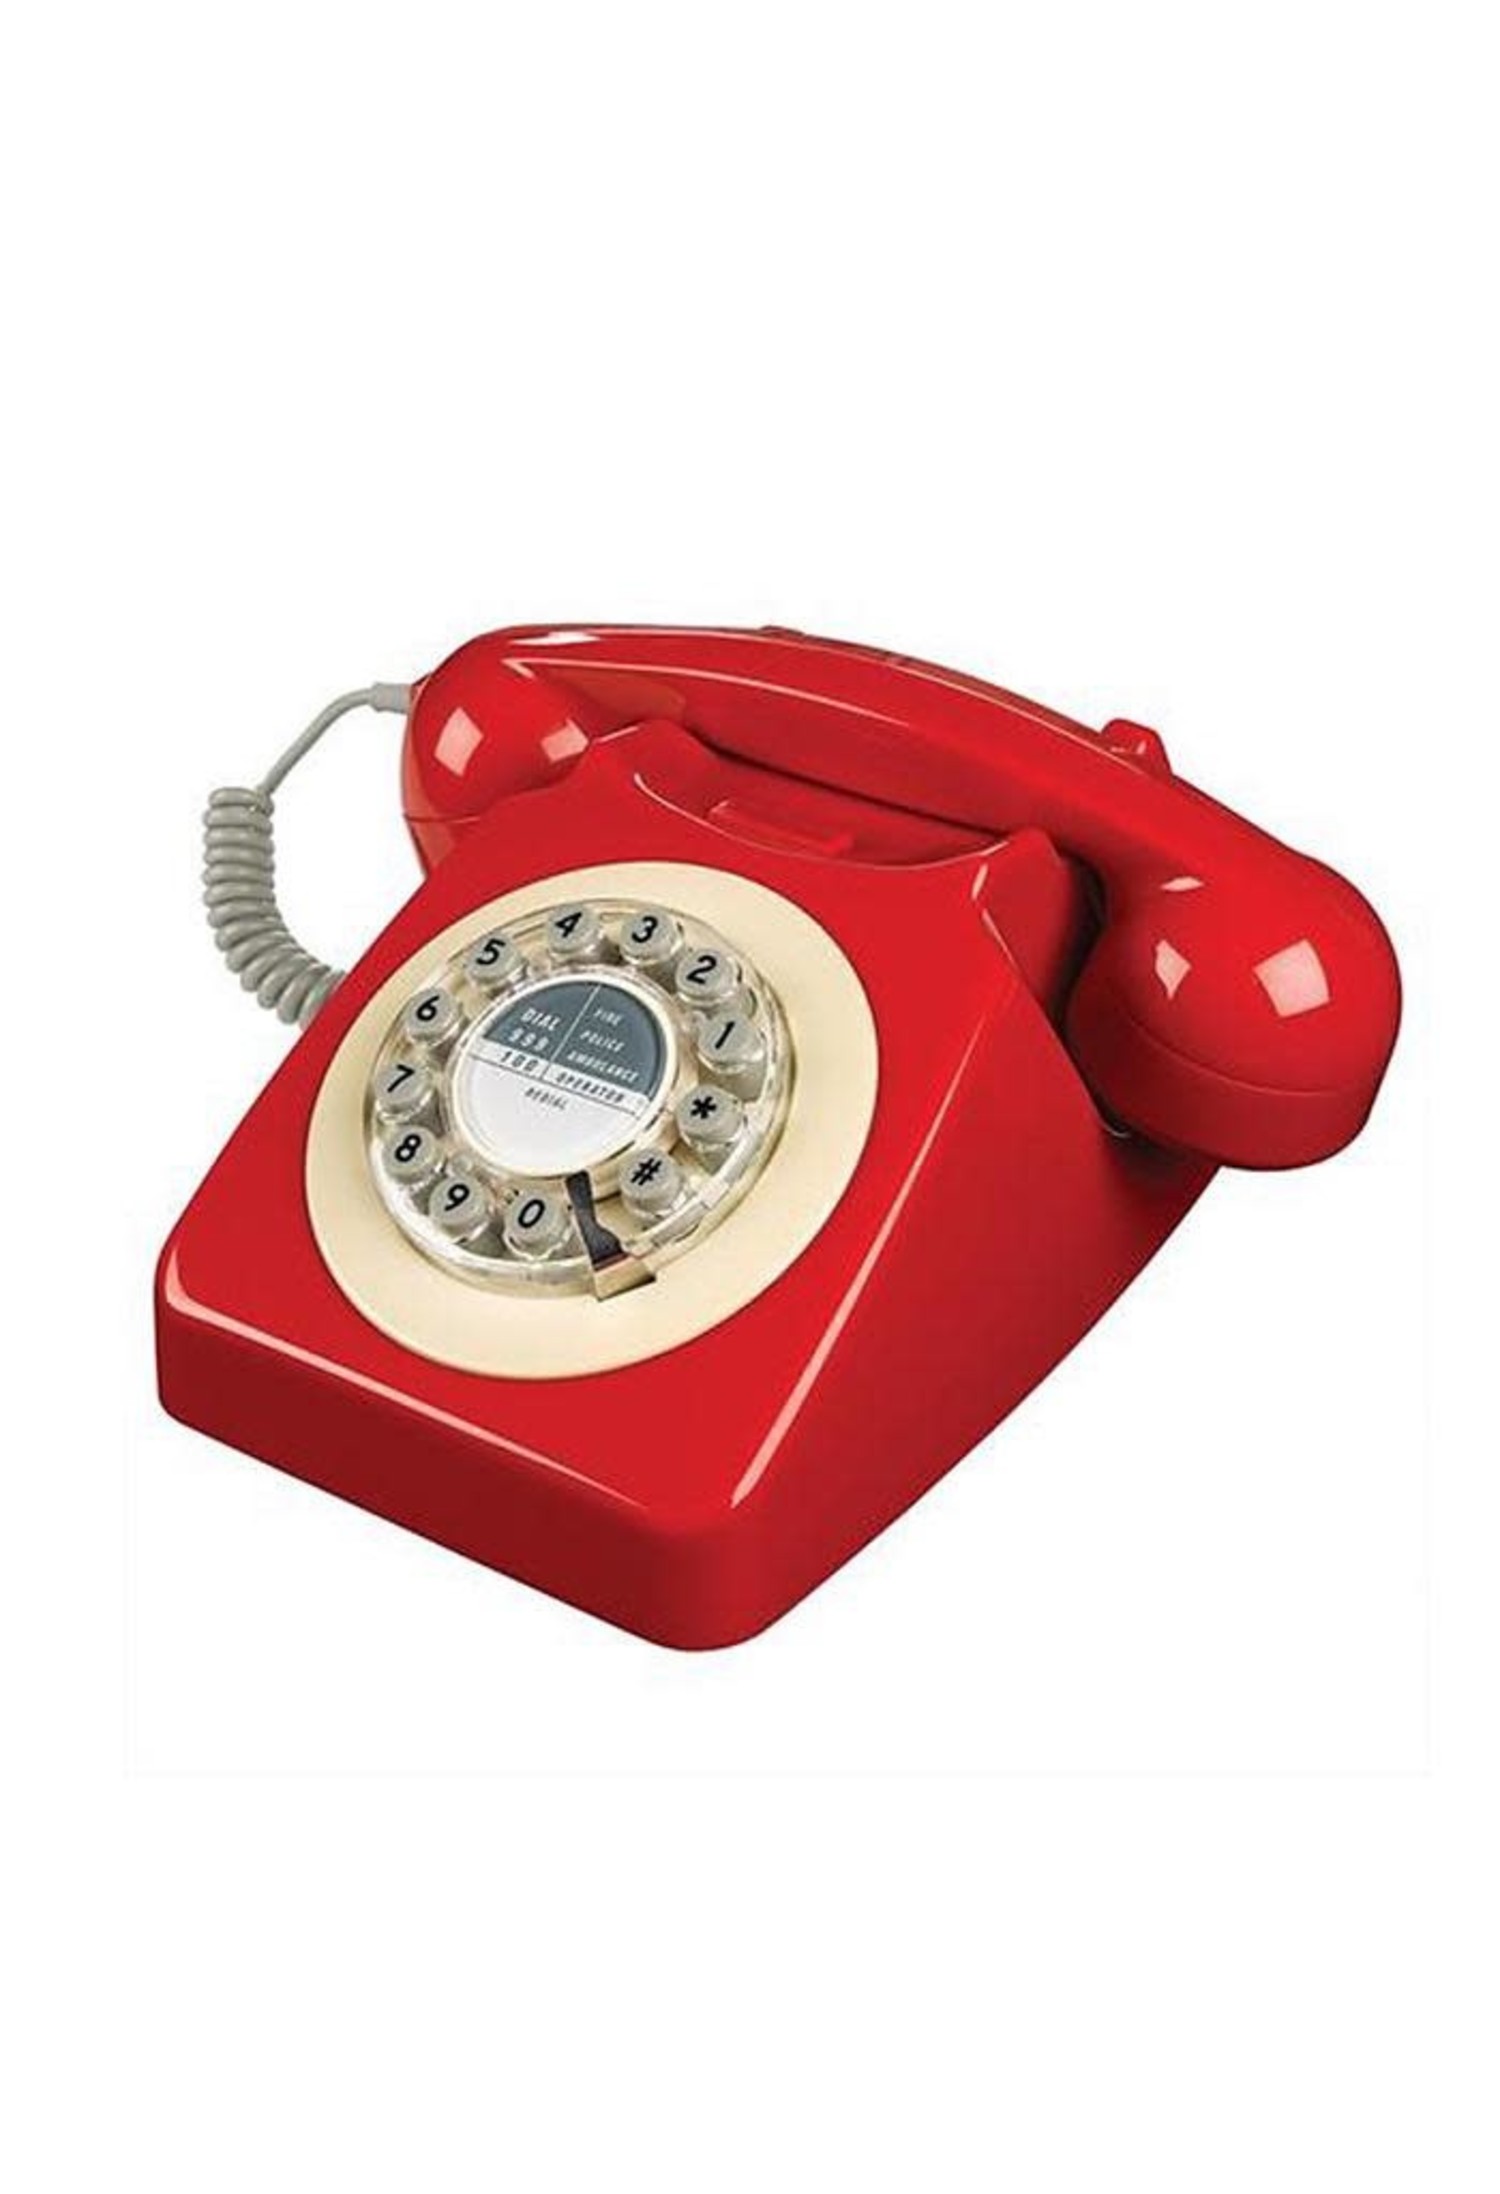 746 Phone Box Red Phone